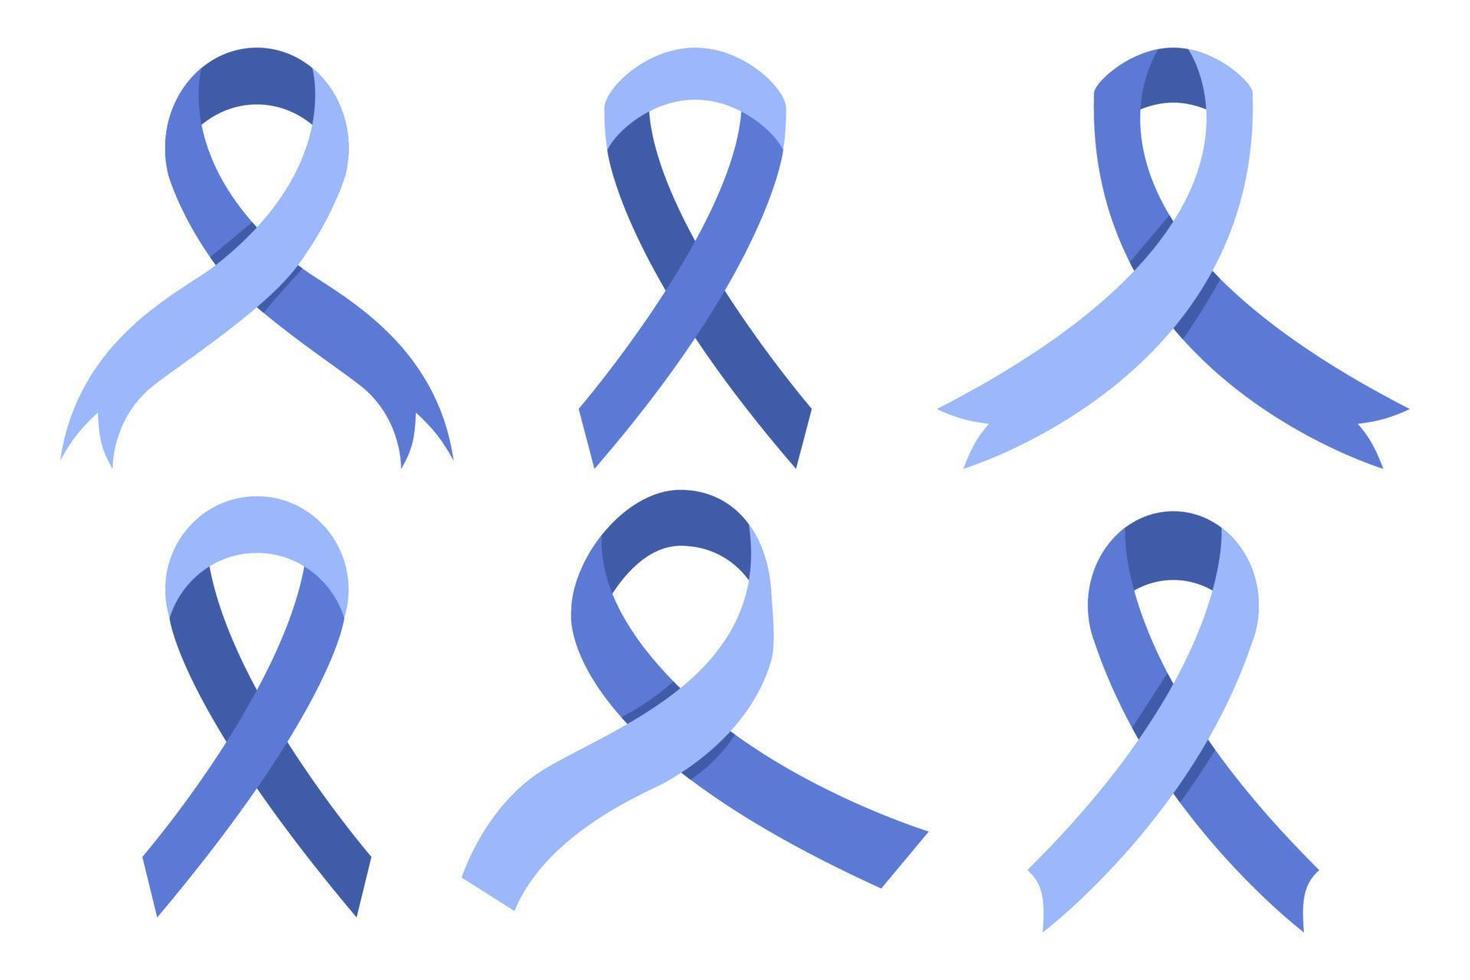 Sammlung von Bewusstseinsbändern. Reihe von blauen Krebsbändern. isoliert auf weißem Hintergrund vollständig editierbar vektor